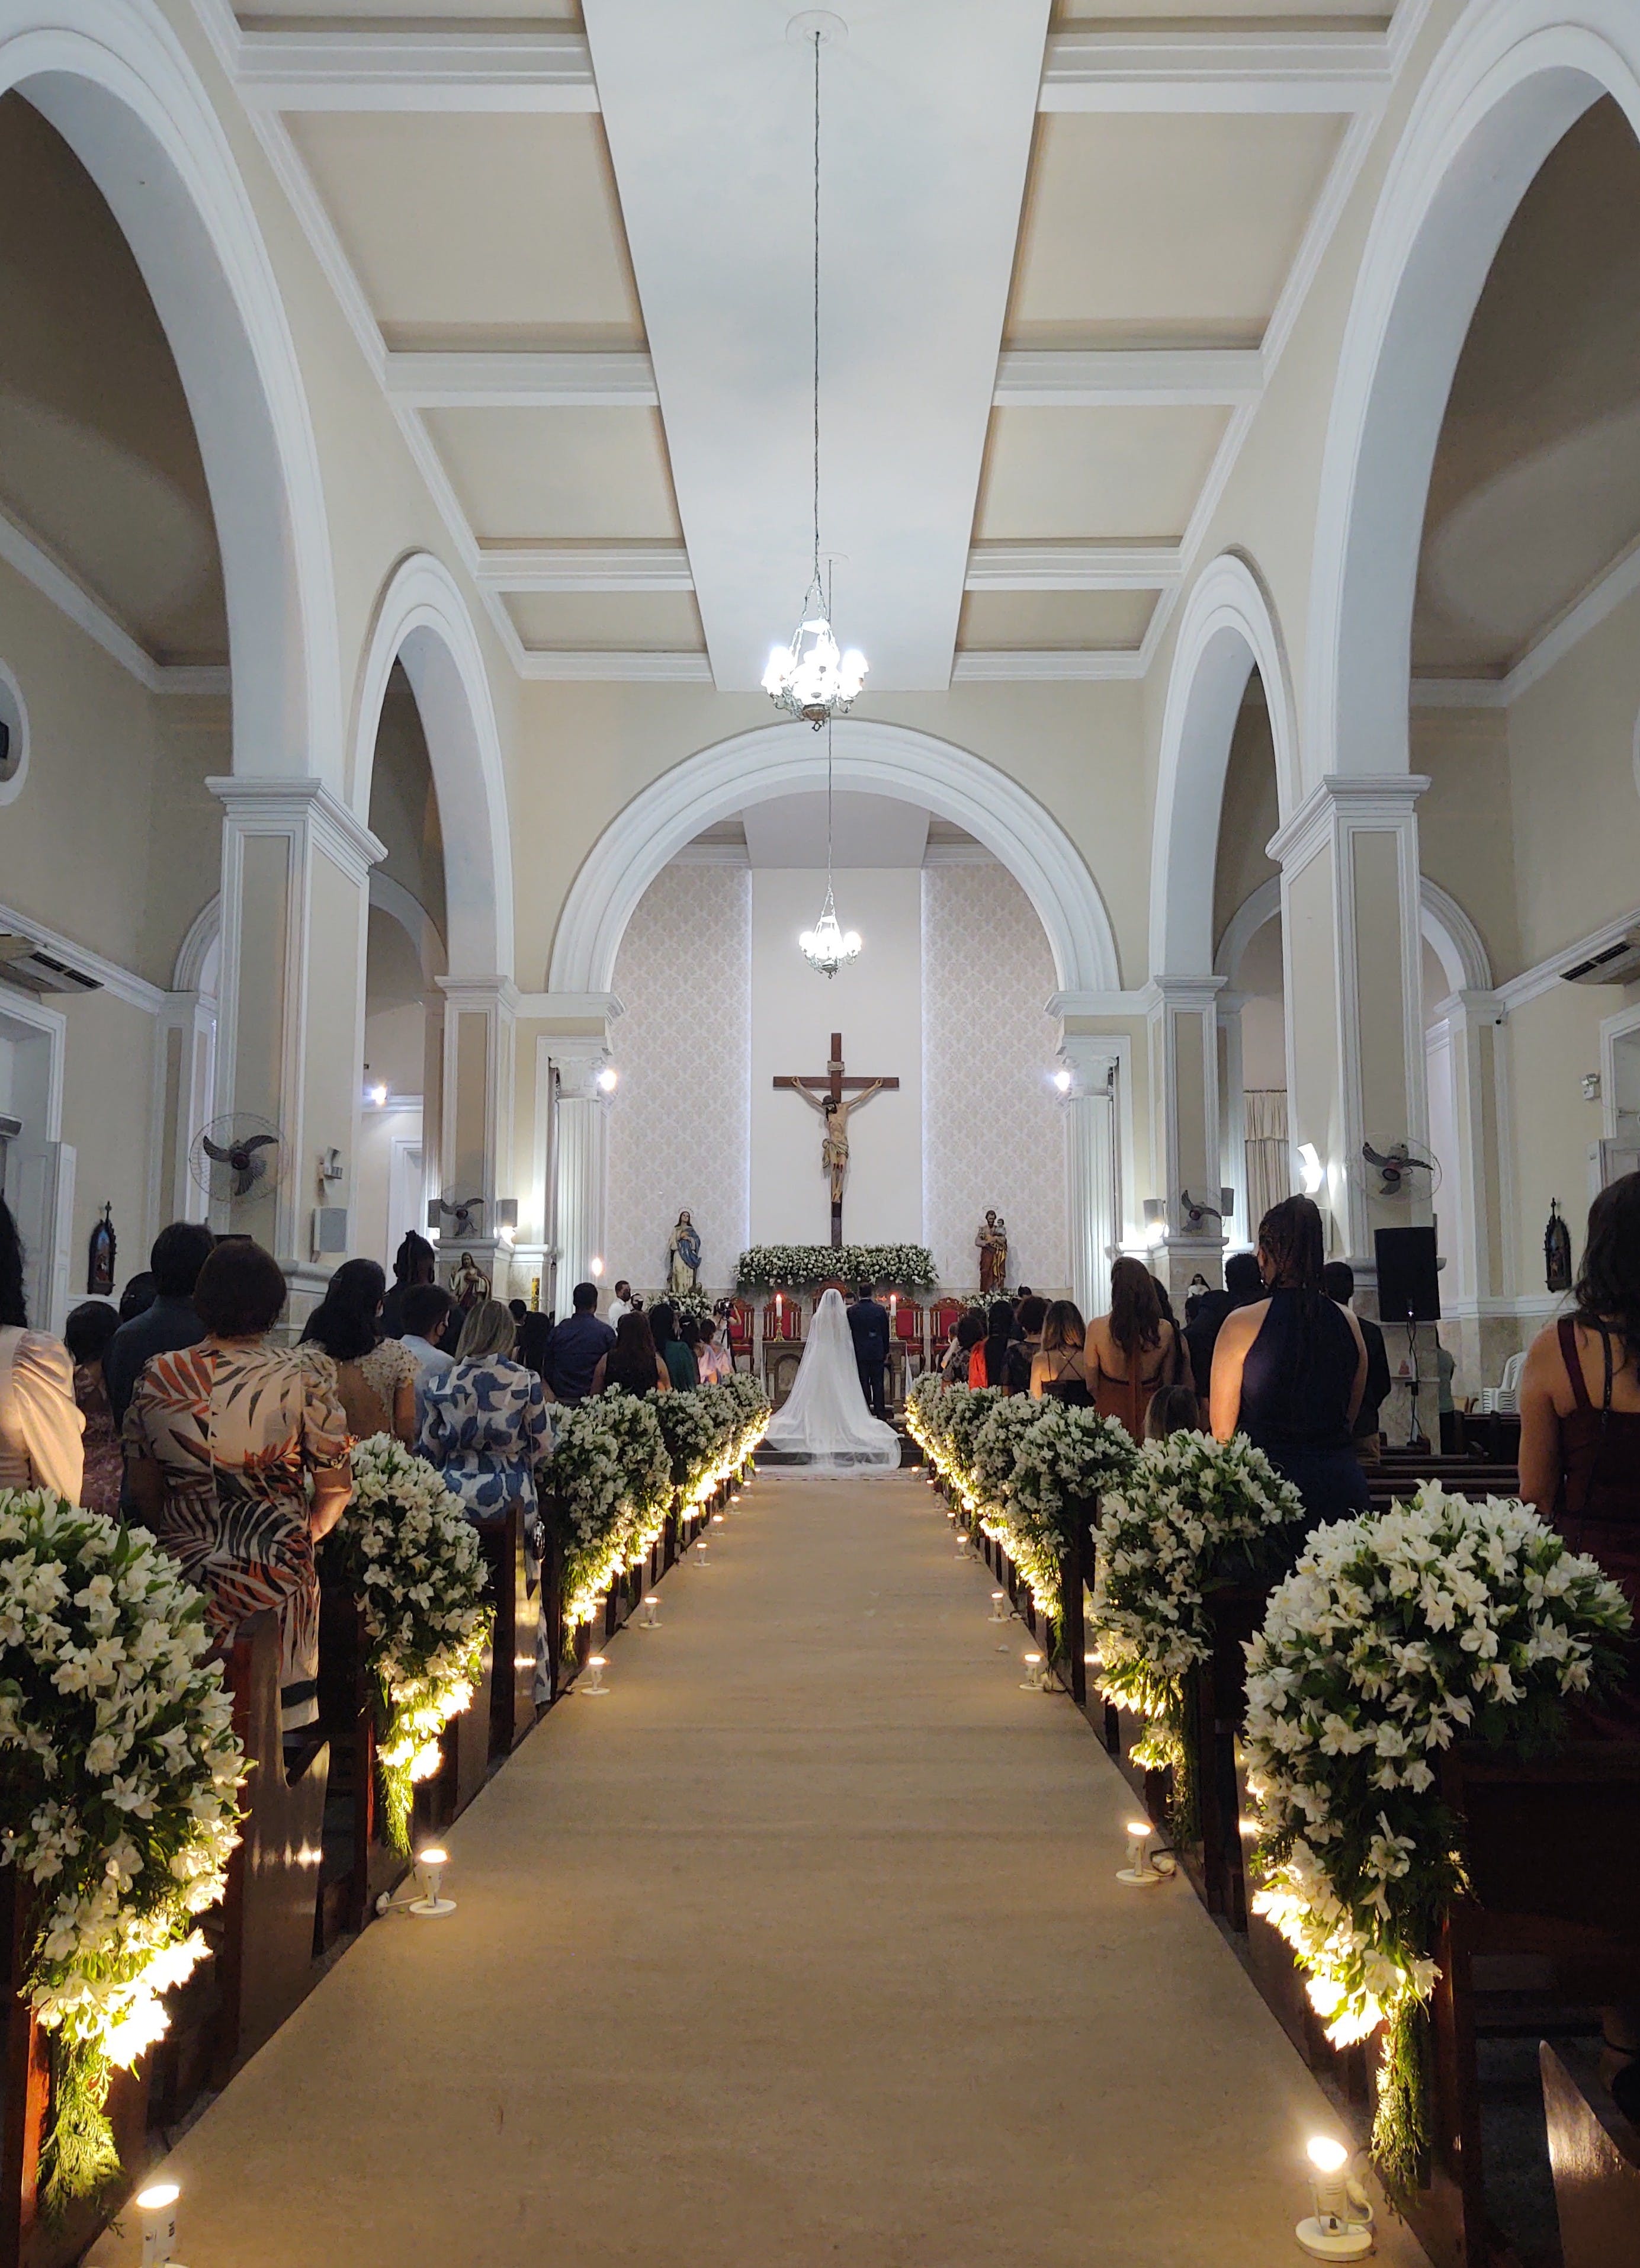 Une église décorée pour un mariage et remplie de monde | Source : Pexels